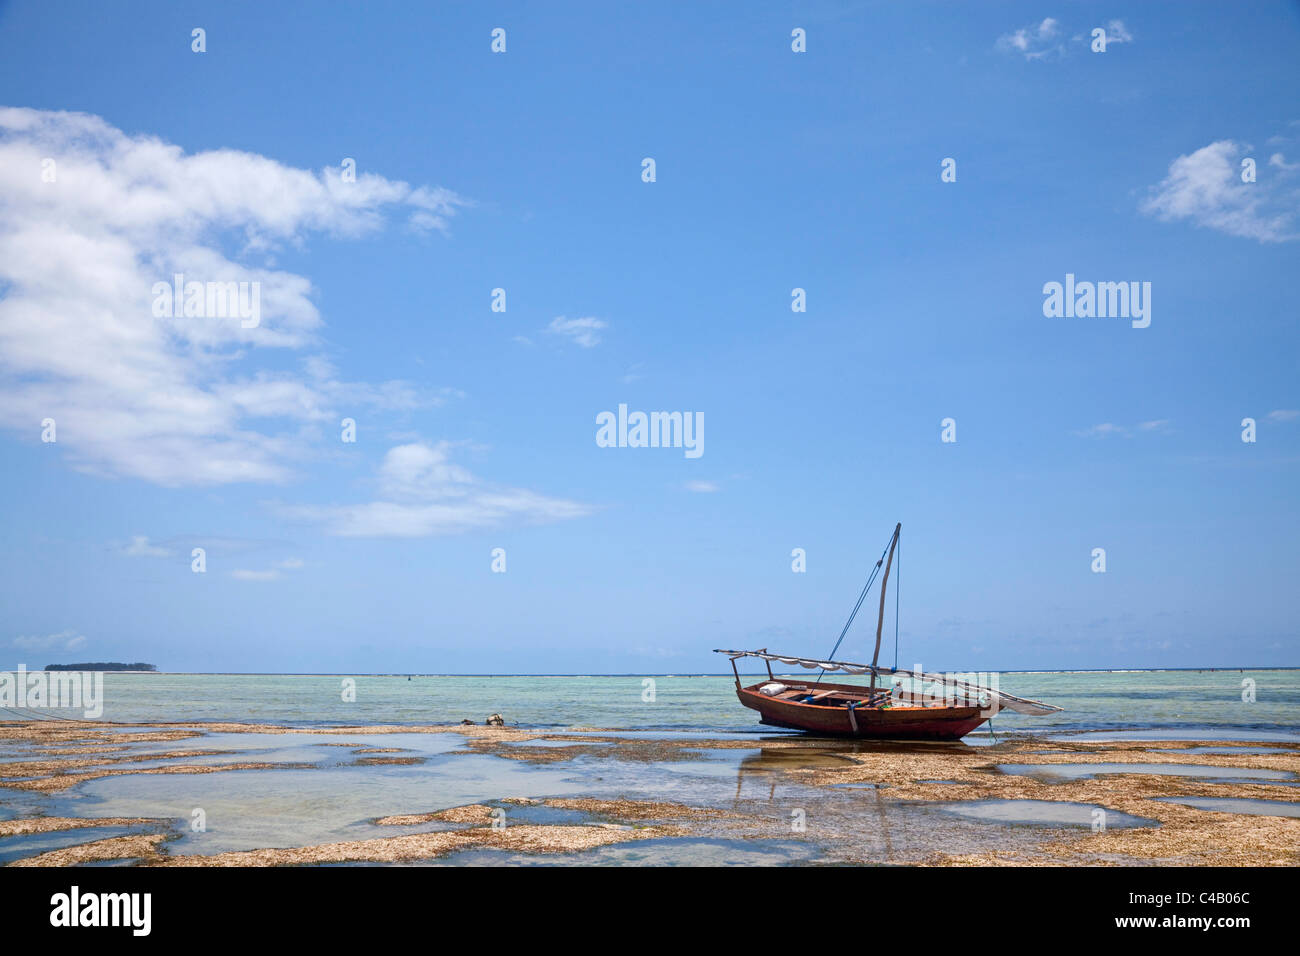 Zanzibar, Kiwengwa. Un bateau, c'est échoué sur la marée basse, avec l'île de Mnemba dans la distance. Banque D'Images